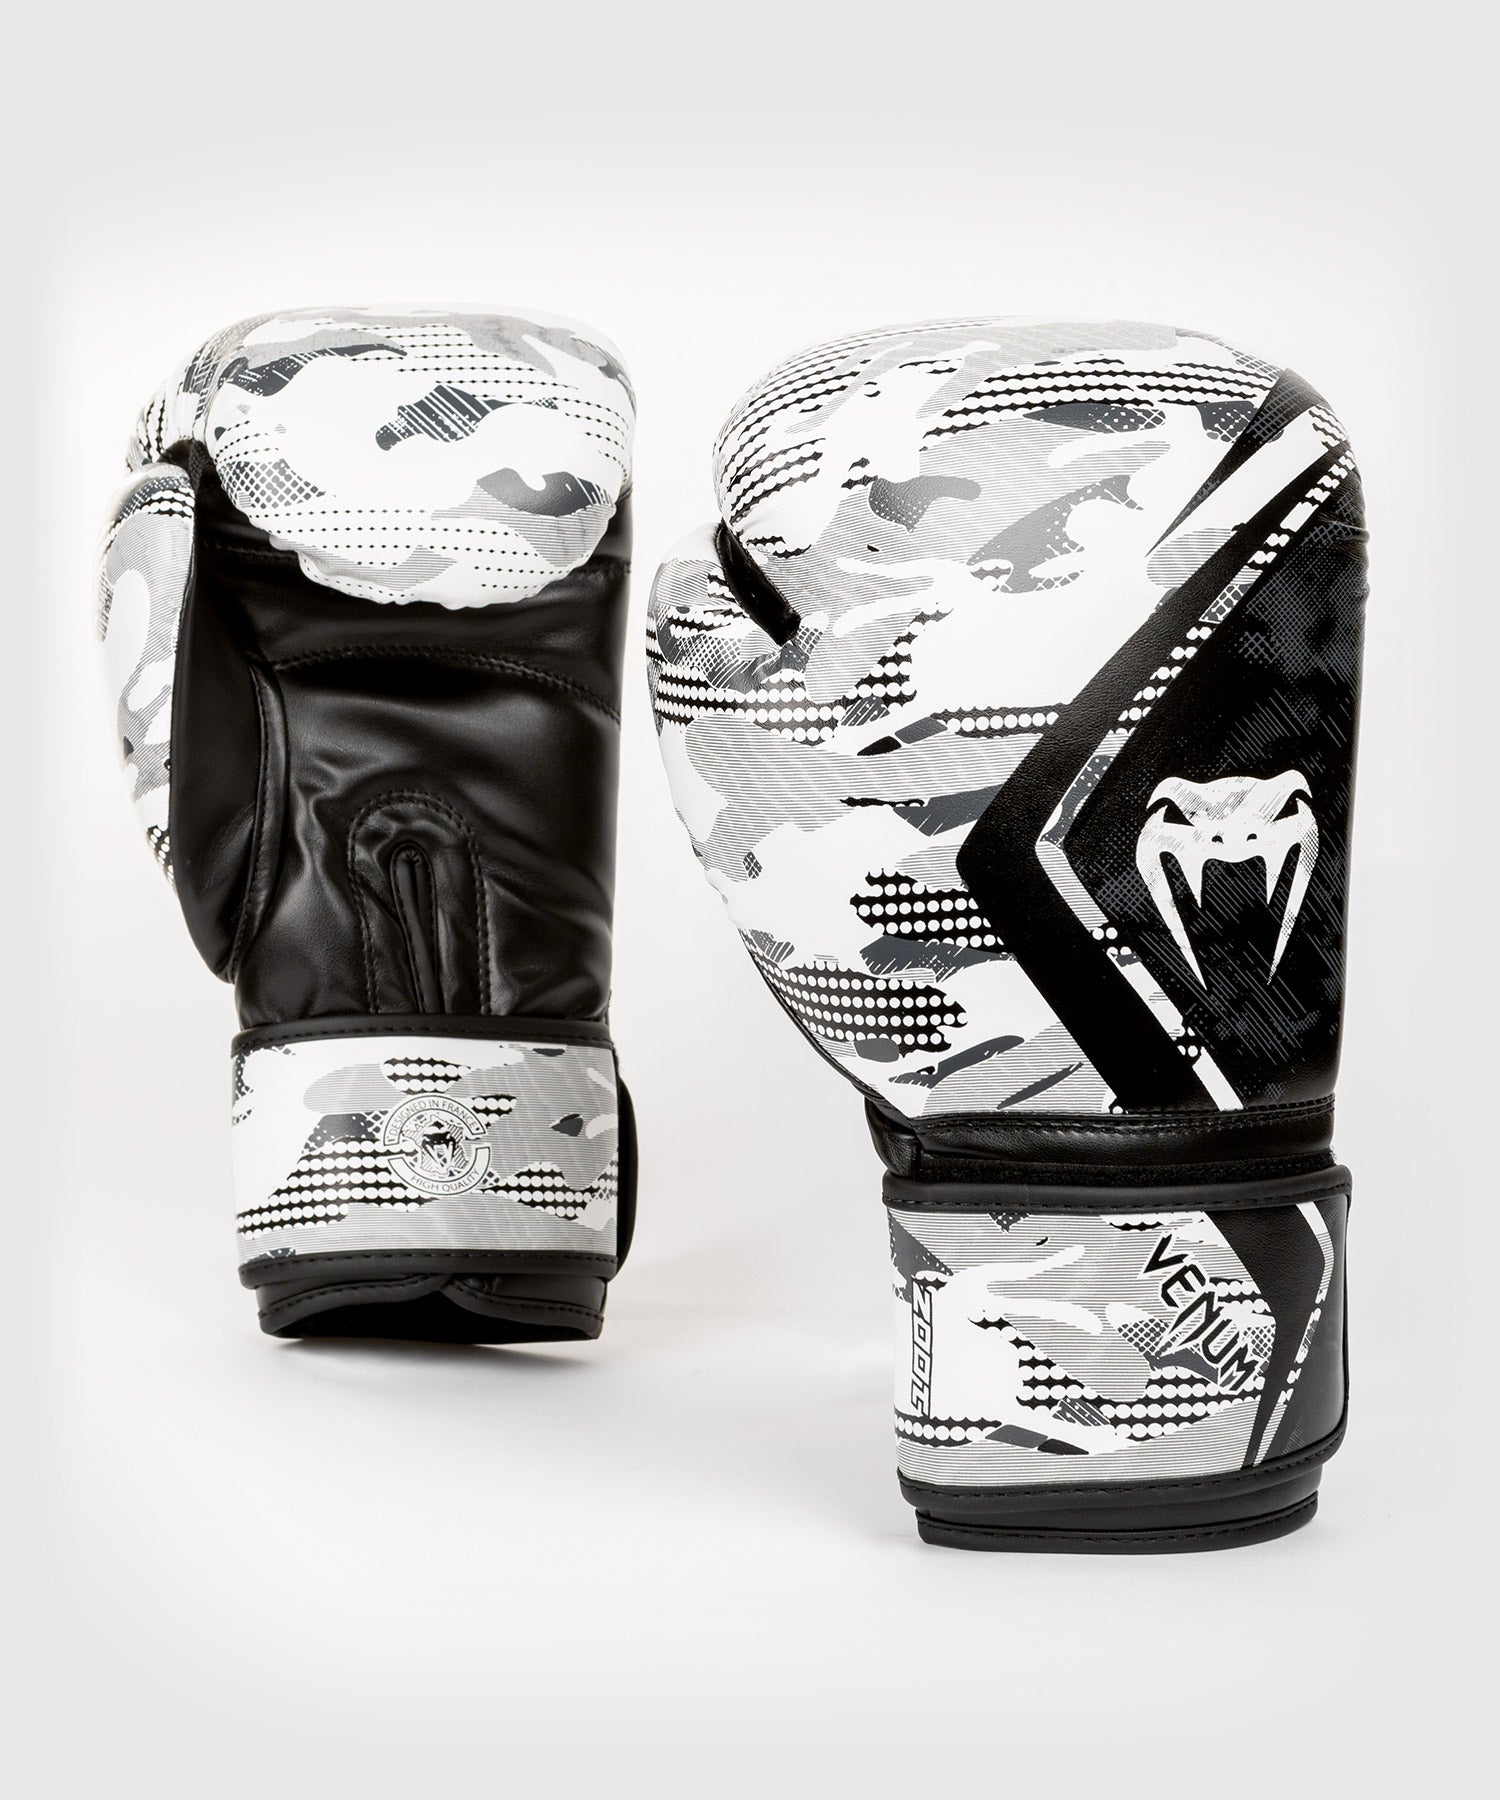 Gants de boxe Venum Contender 2.0 - Gants de Boxe - Gants & Protections -  Sports de combat